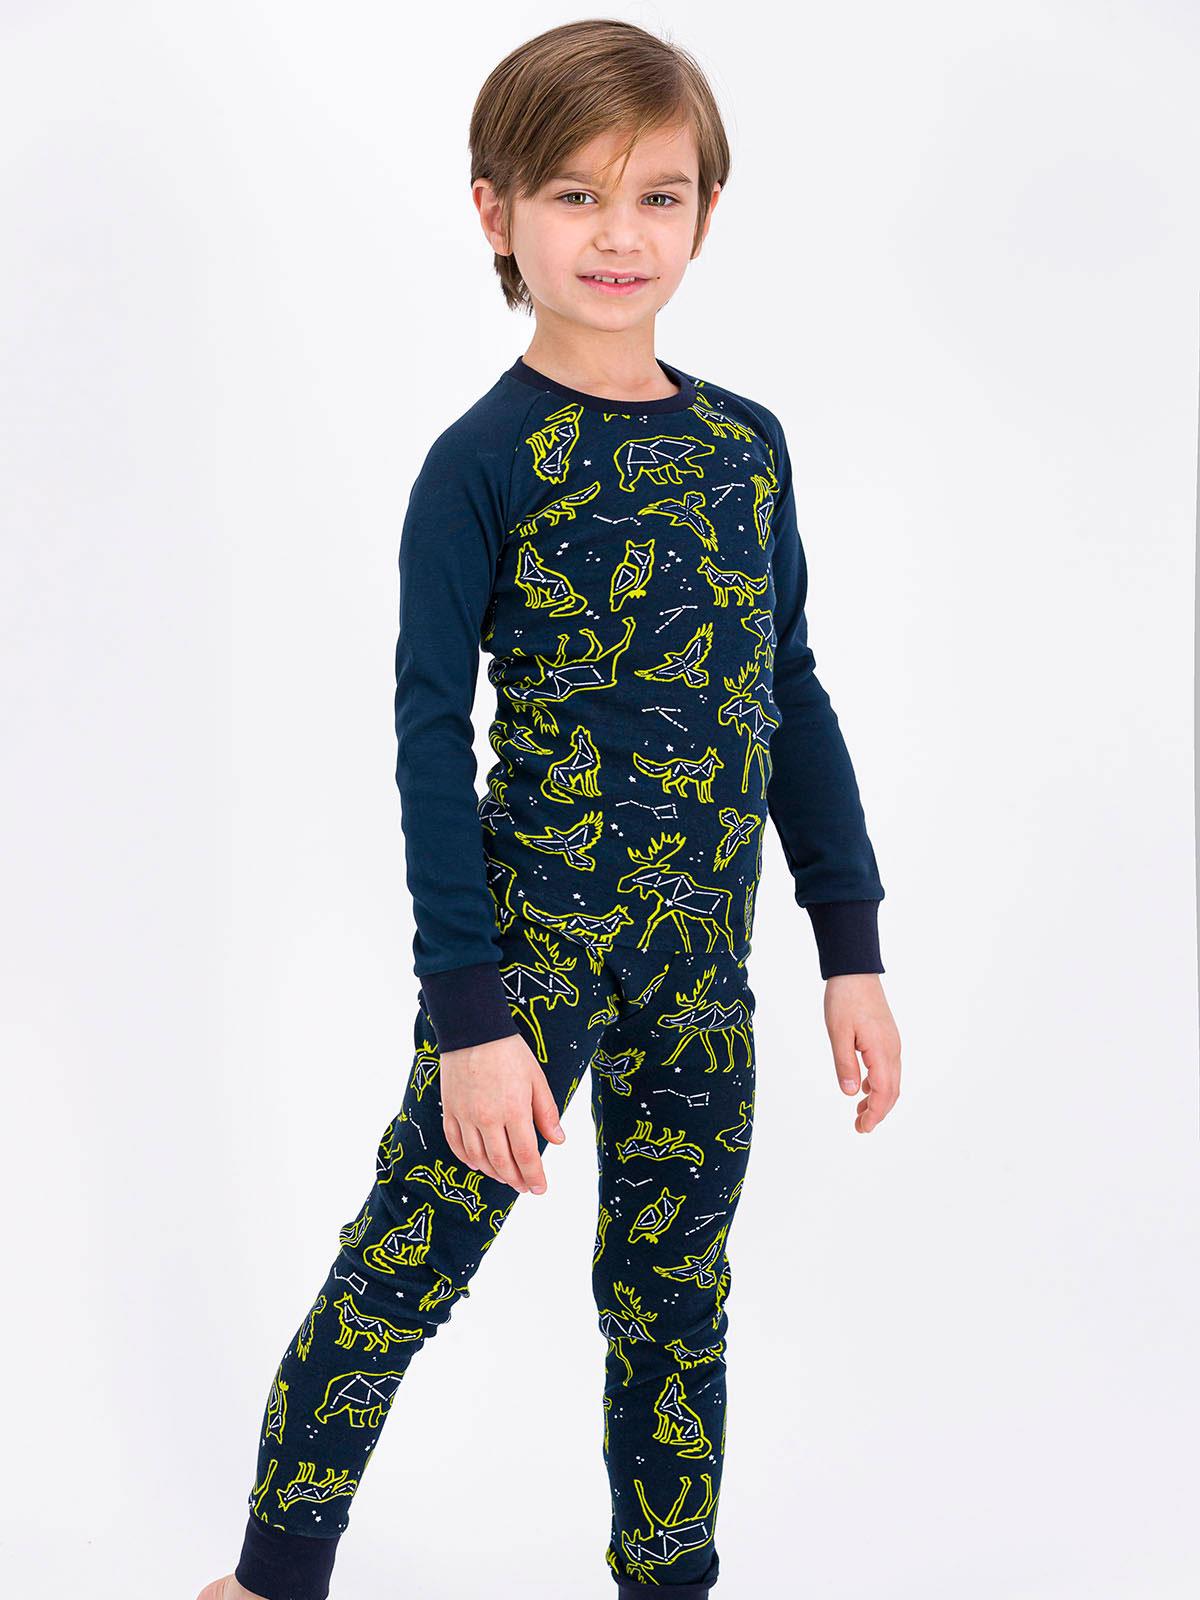 Roly Poly Erkek Çocuk Pijama Takımı 9-14 Yaş Lacivert